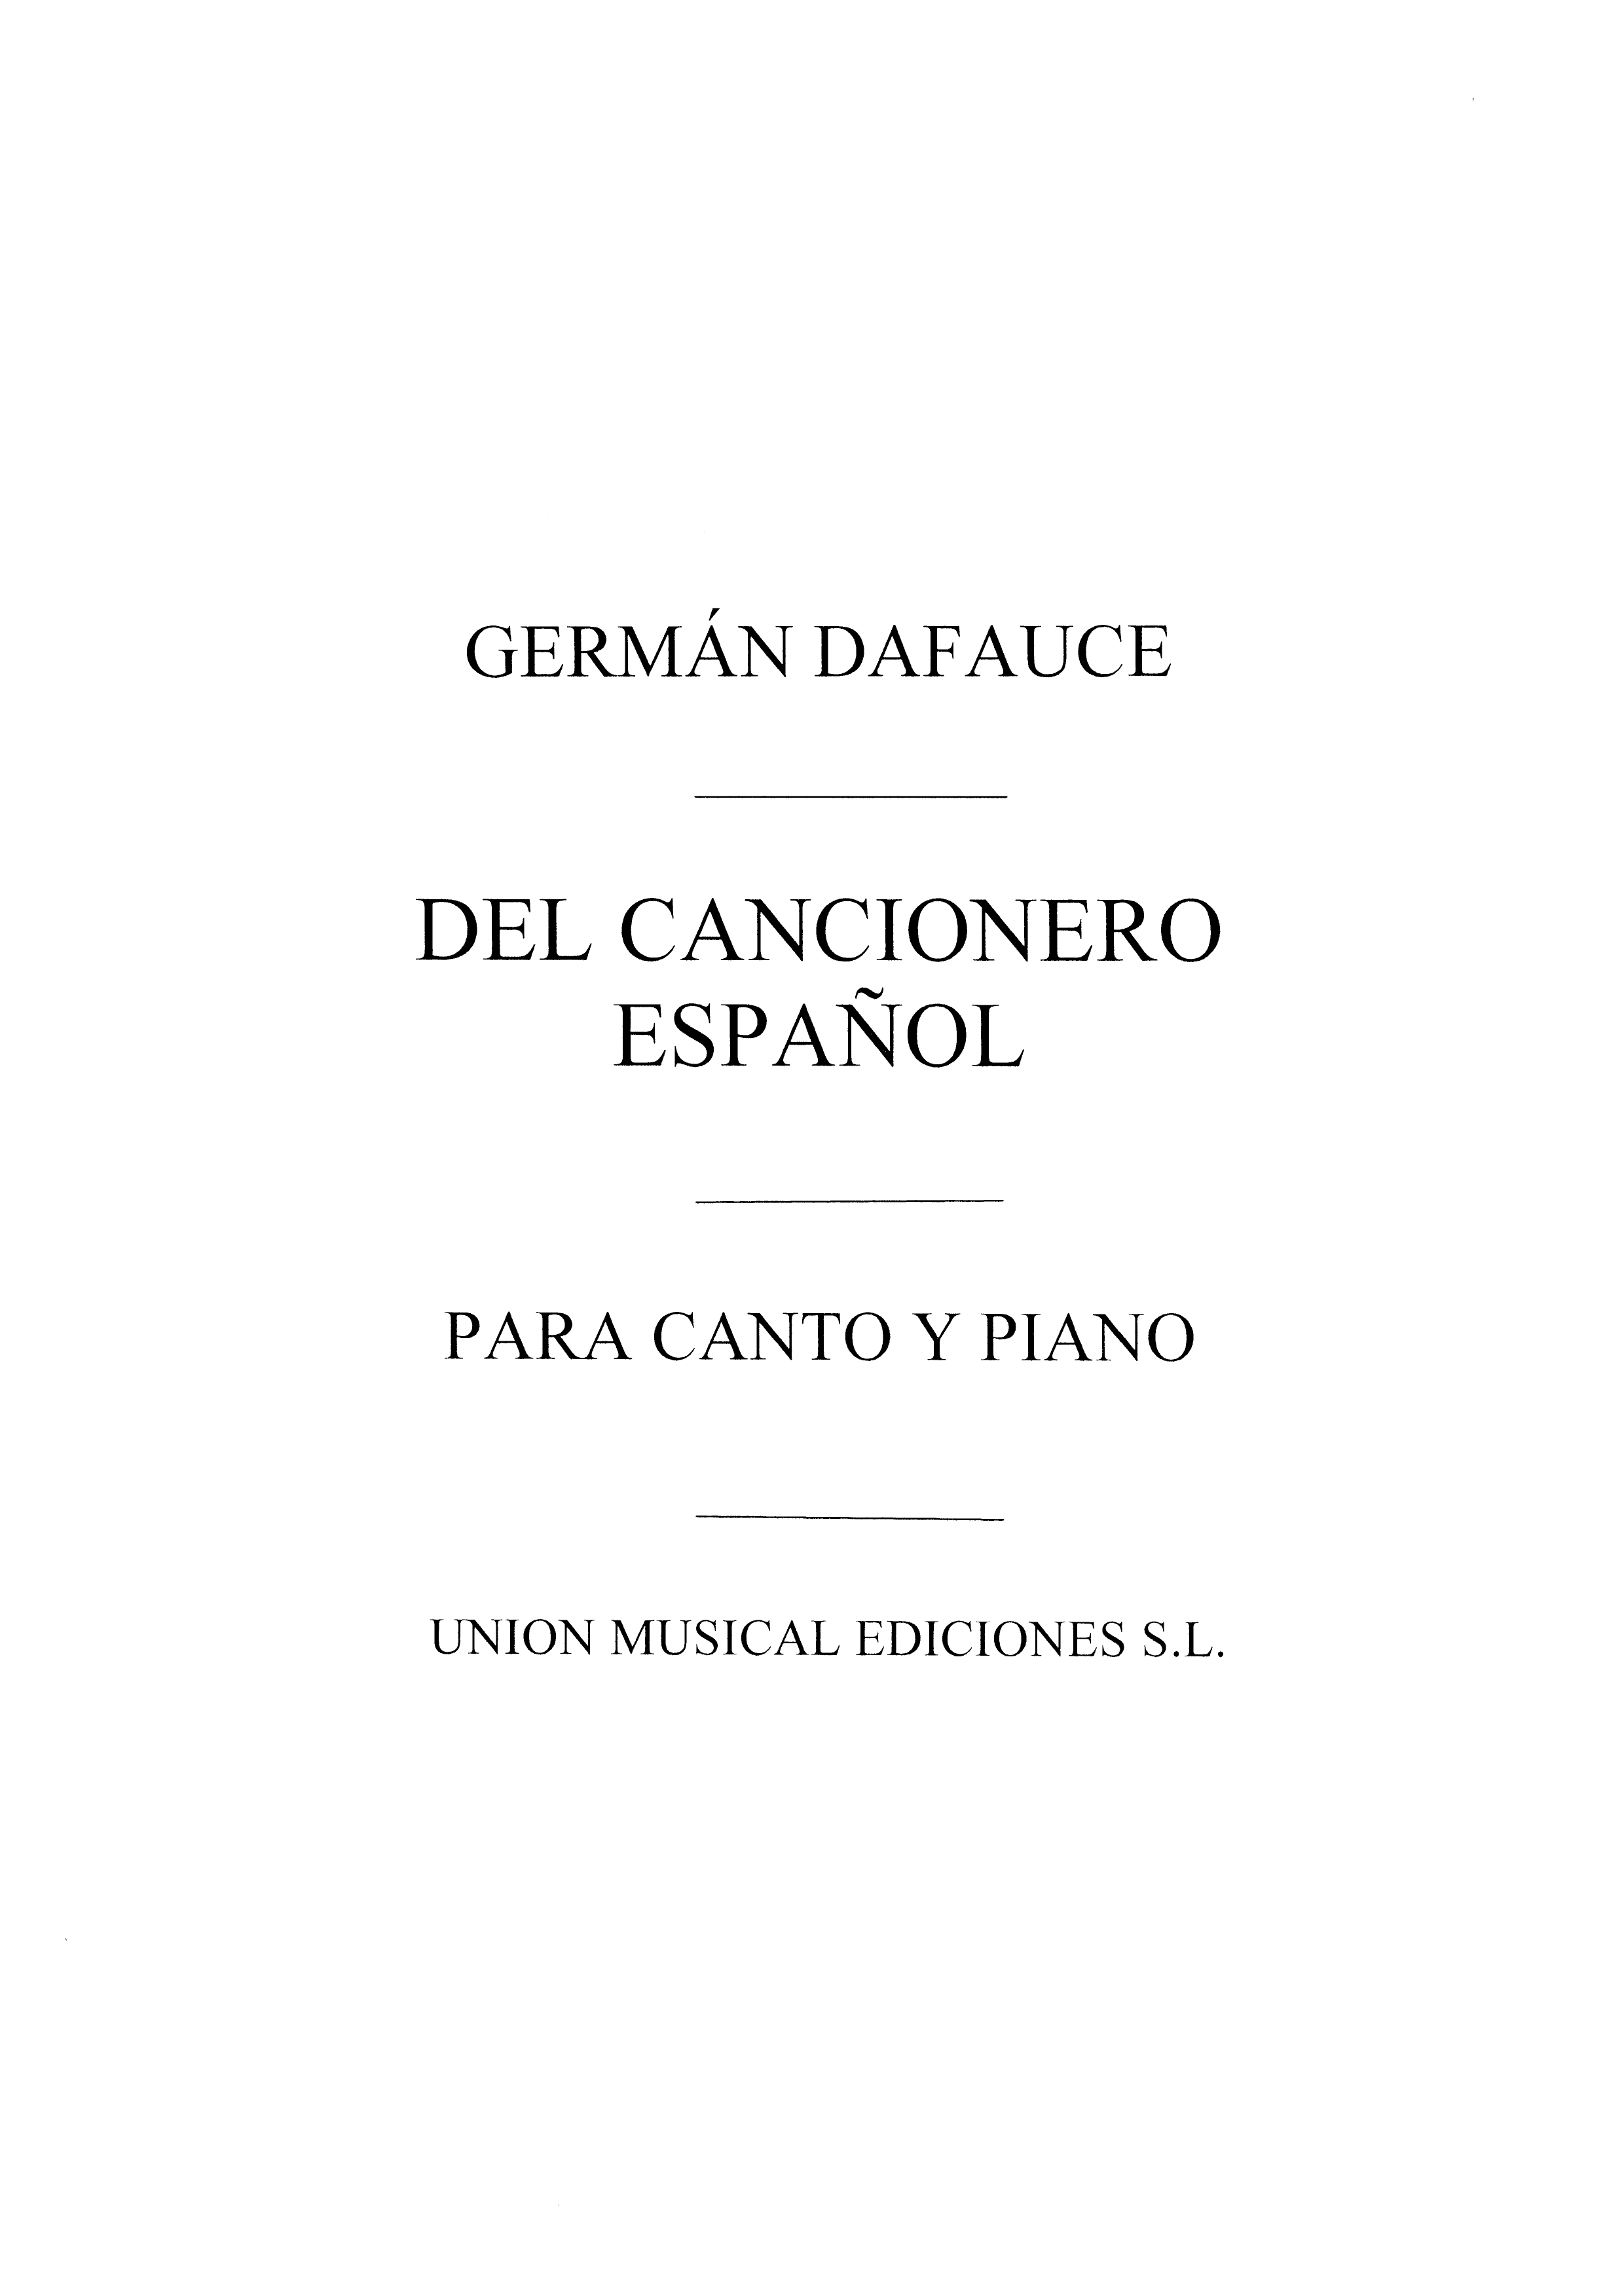 German Dafauce: Dafauce: Del Cancionero Espanol for V.M.: Voice: Instrumental